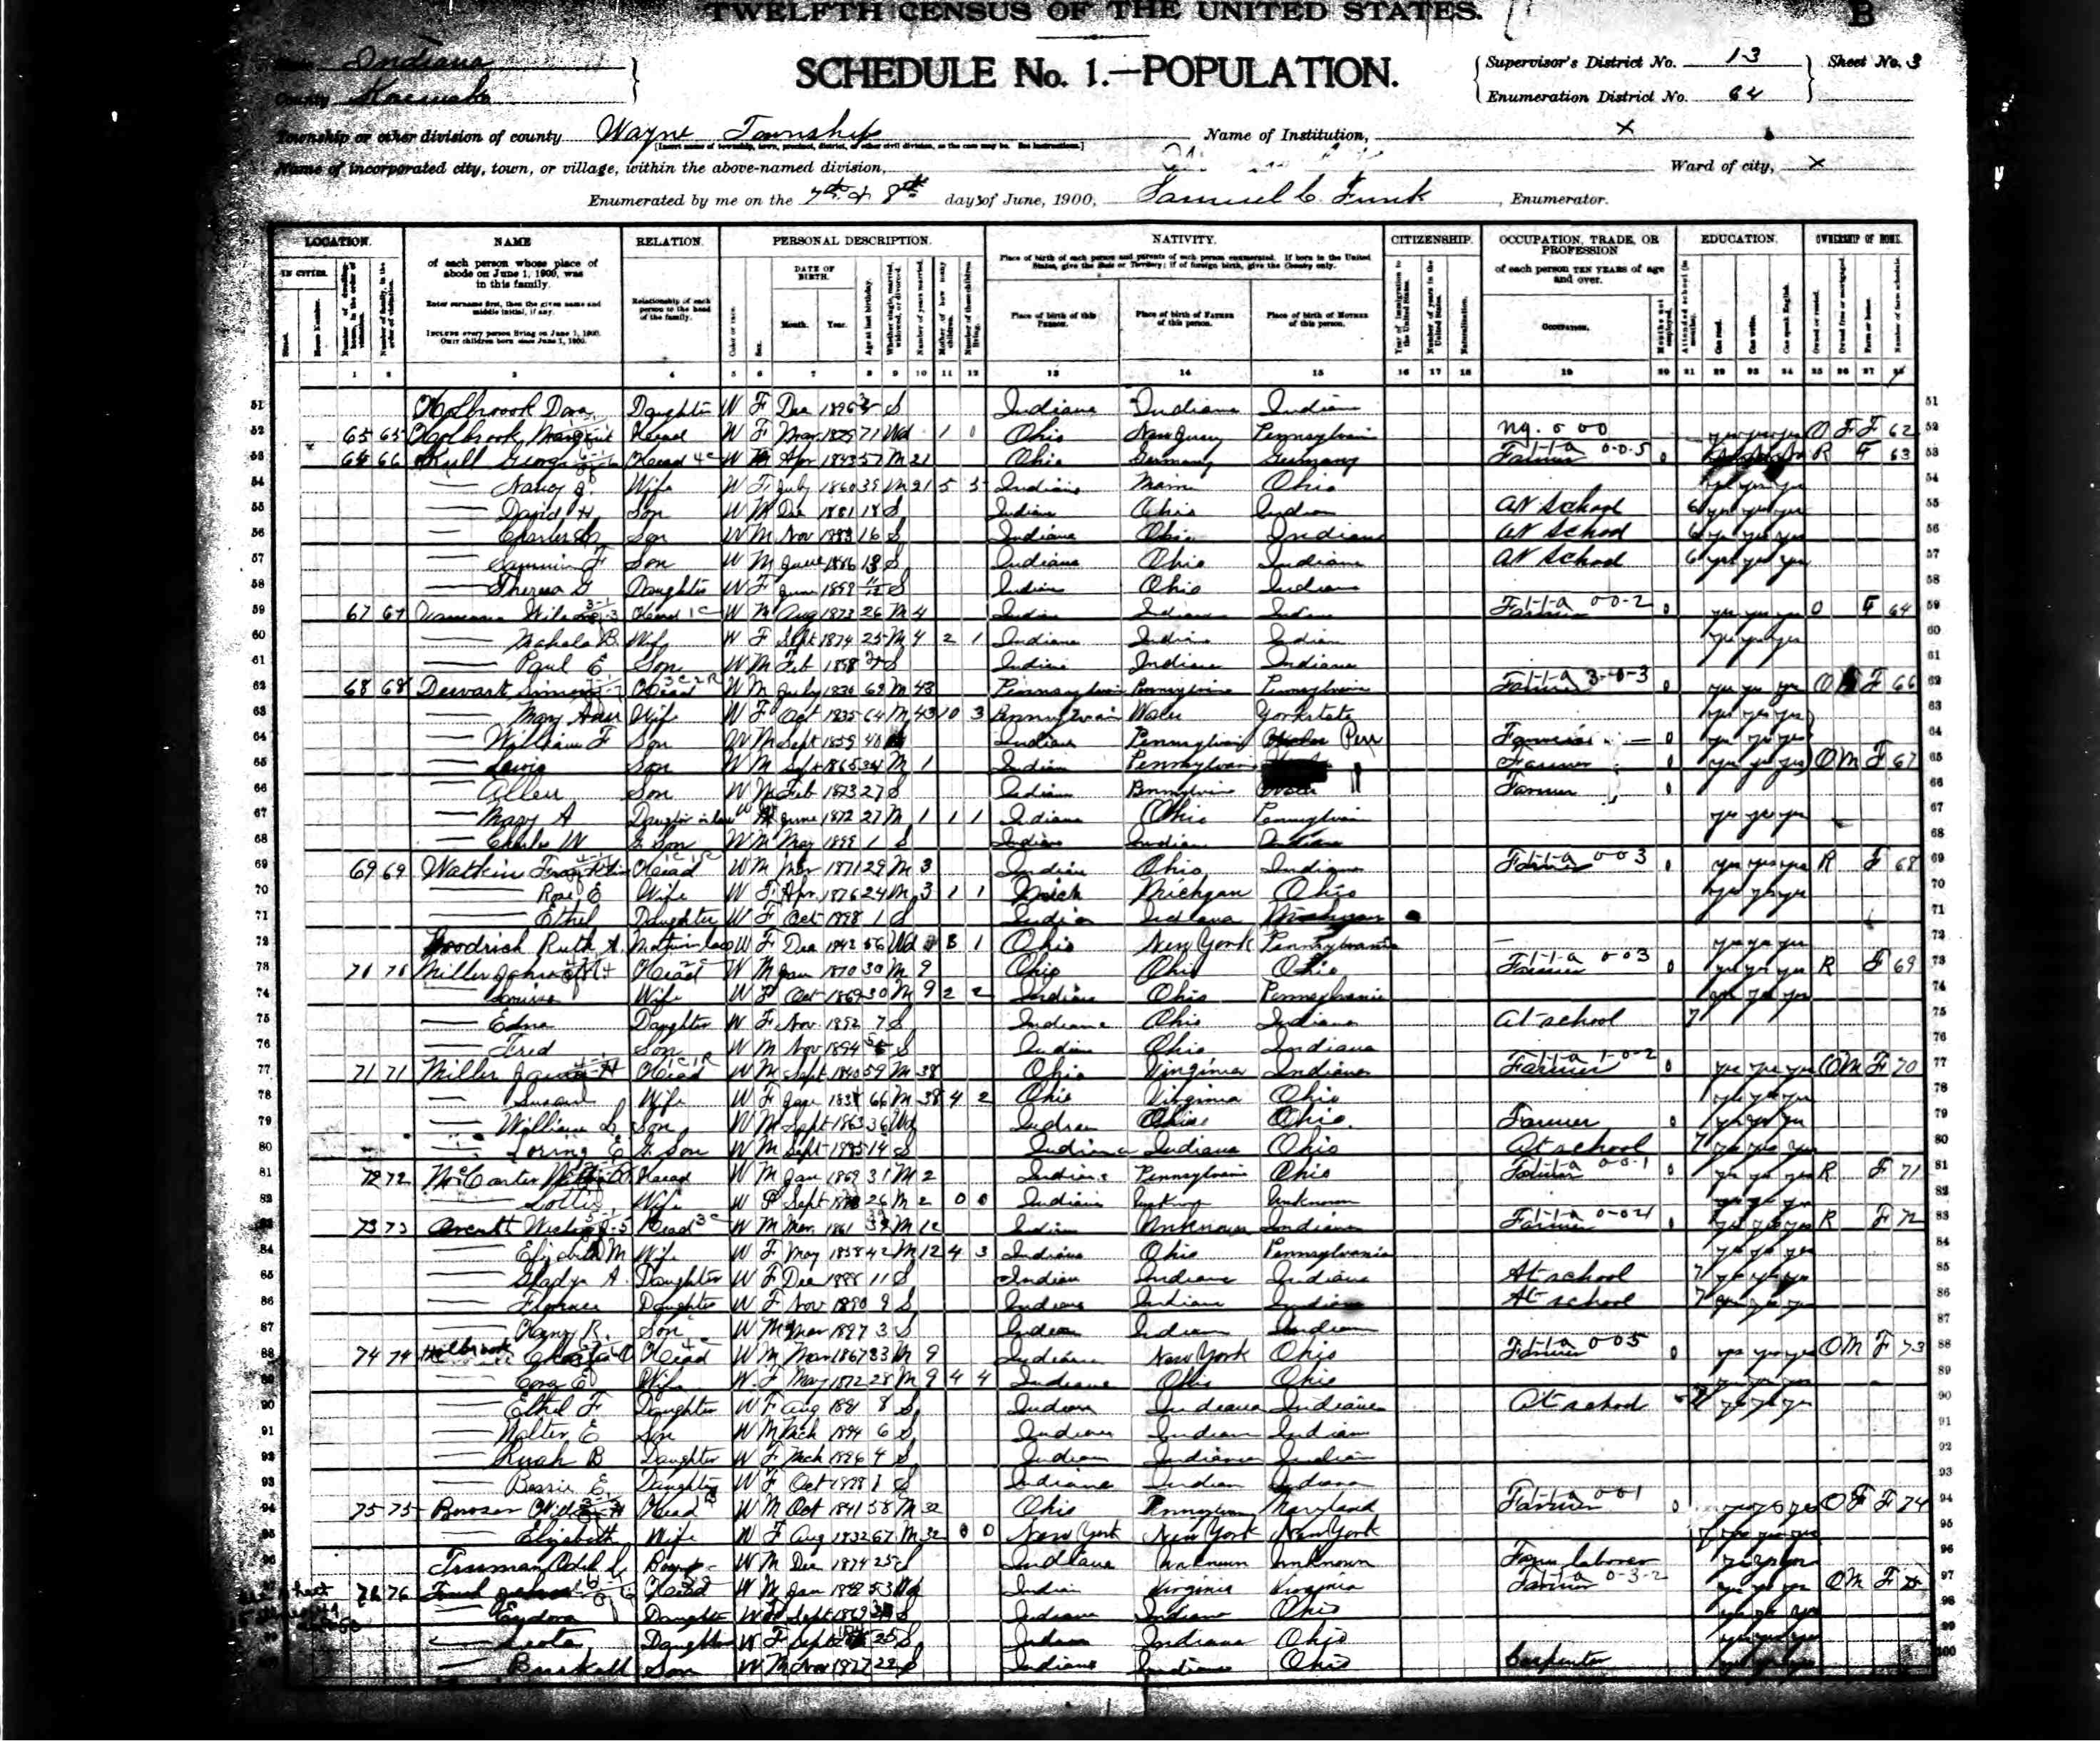 1900 census William McCarter